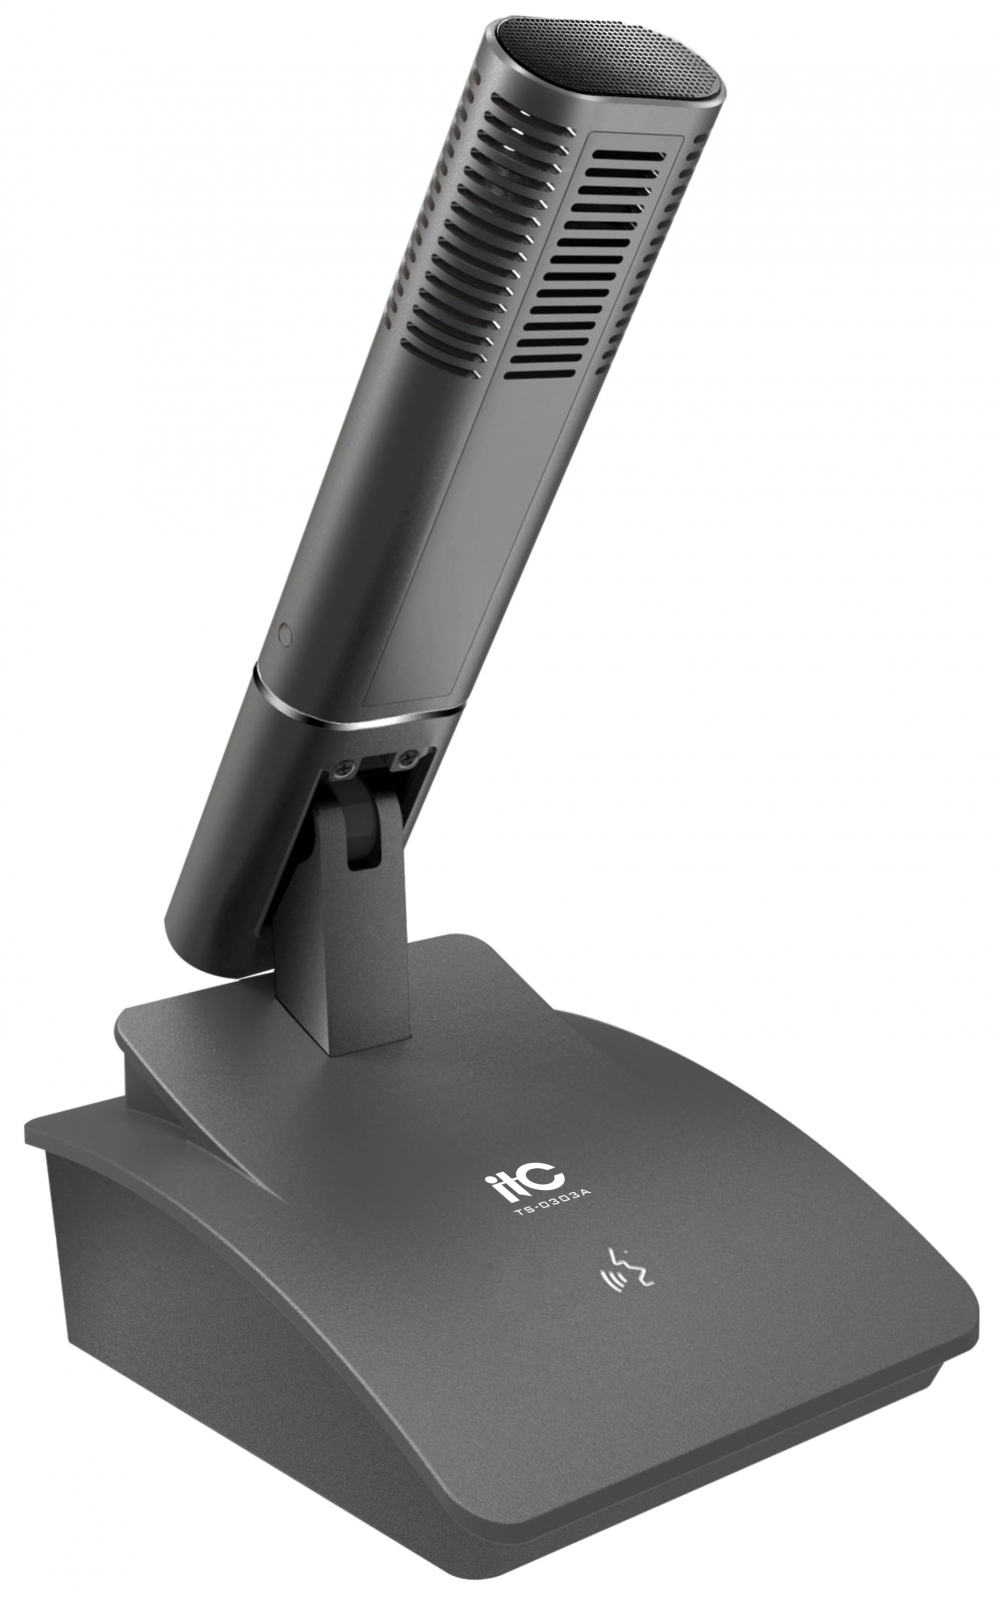 ITC TS-0303A микрофон делегата,серый цвет